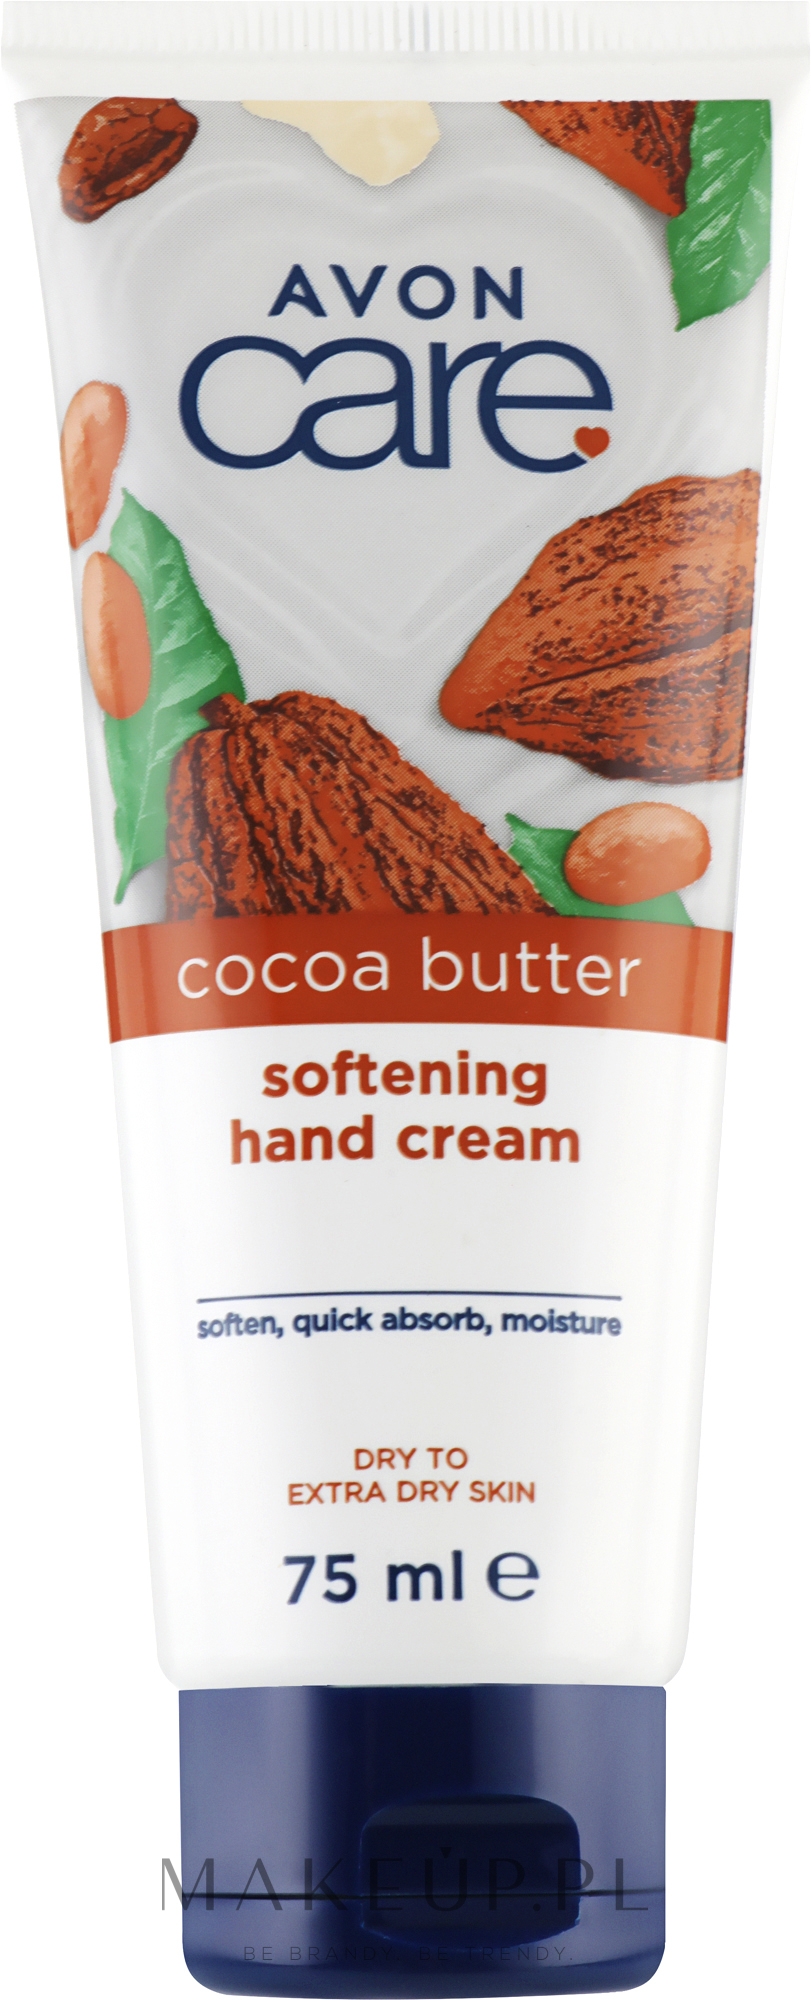 Odżywczy krem do rąk z masłem kakaowym do skóry suchej i ekstrasuchej - Avon Care Nourishing Hand Cream — Zdjęcie 75 ml